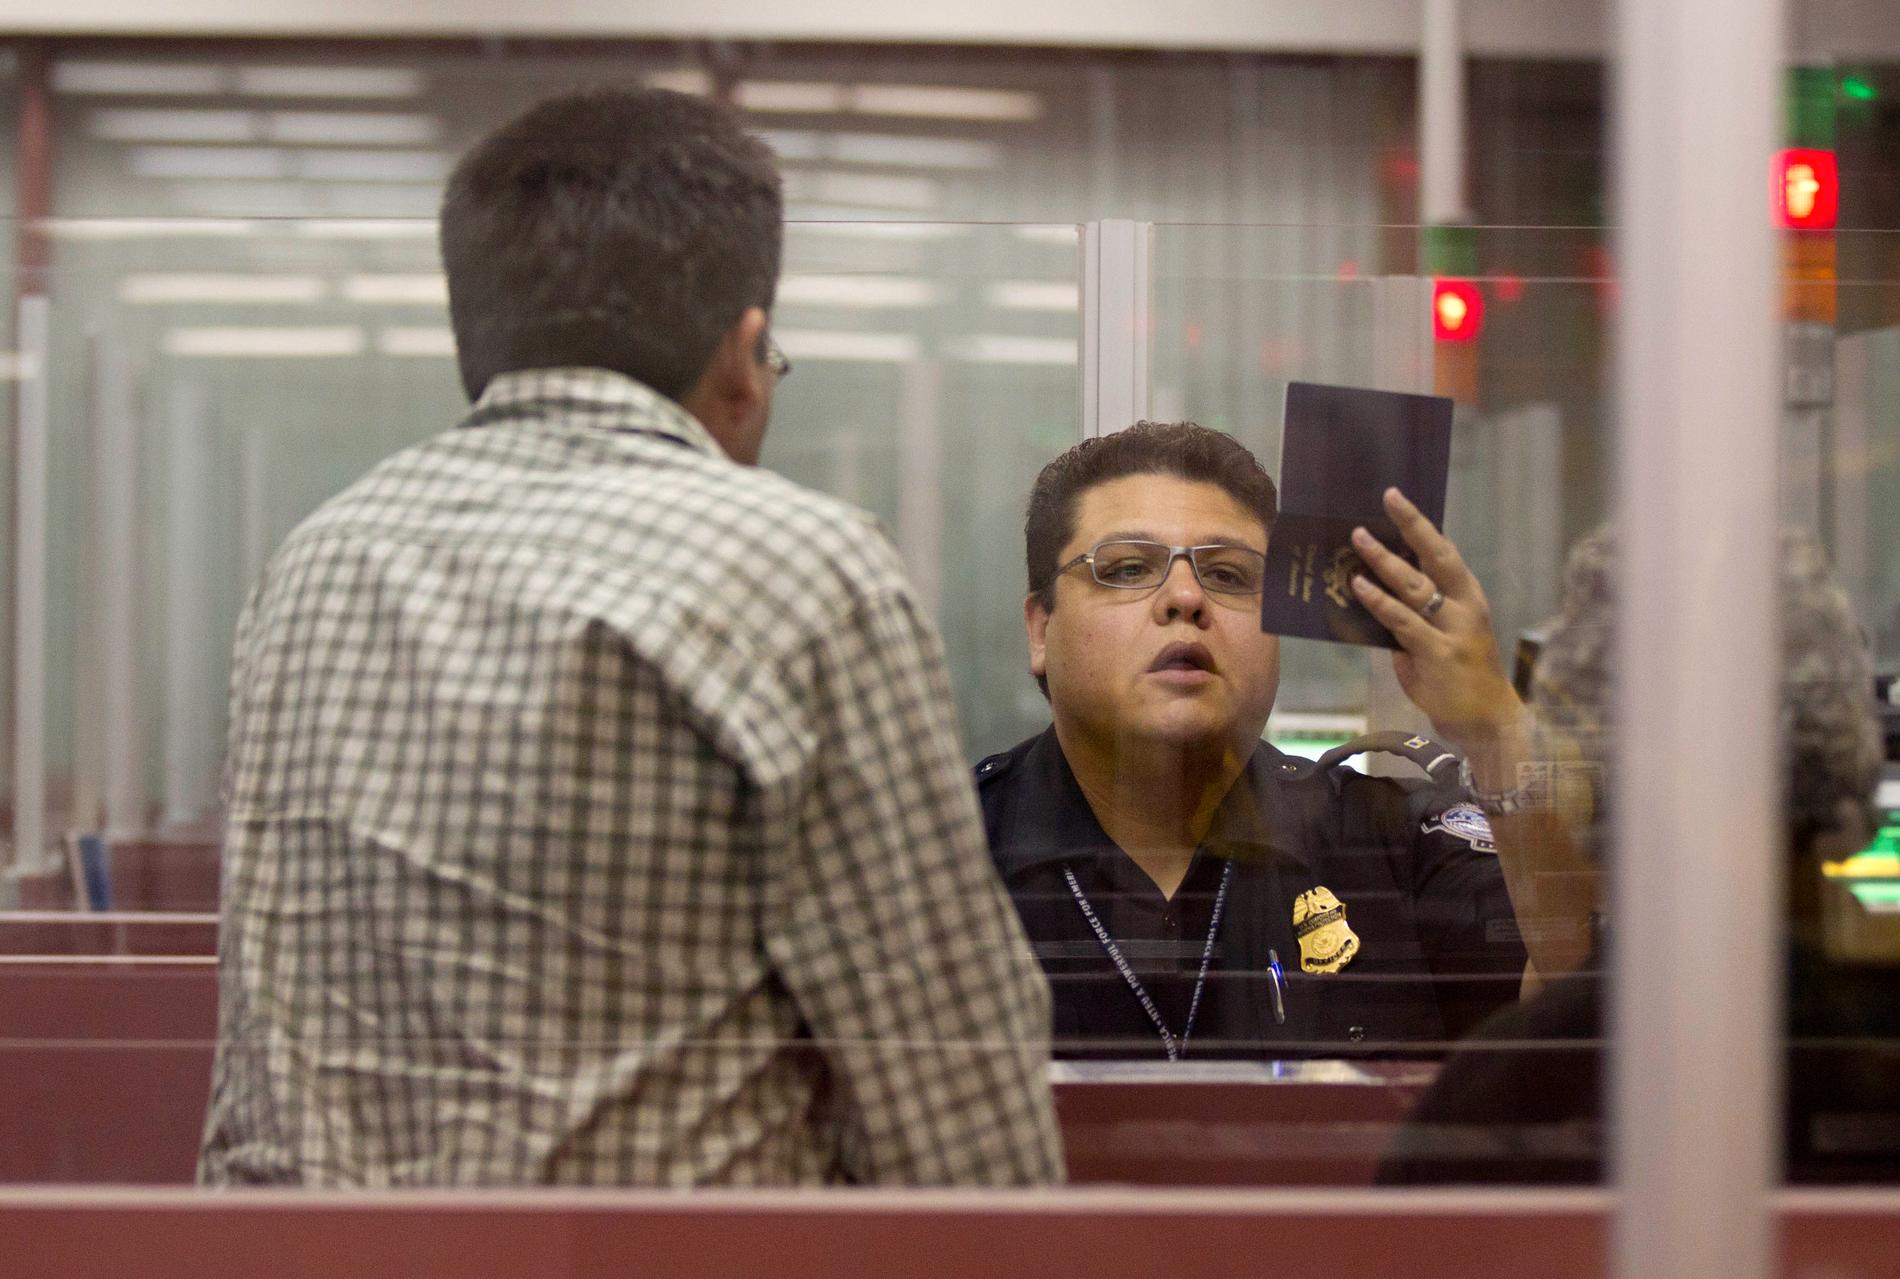 En besökare passerar passkontrollen på den internationella flygplatsen i Las Vegas i USA. Arkivbild.